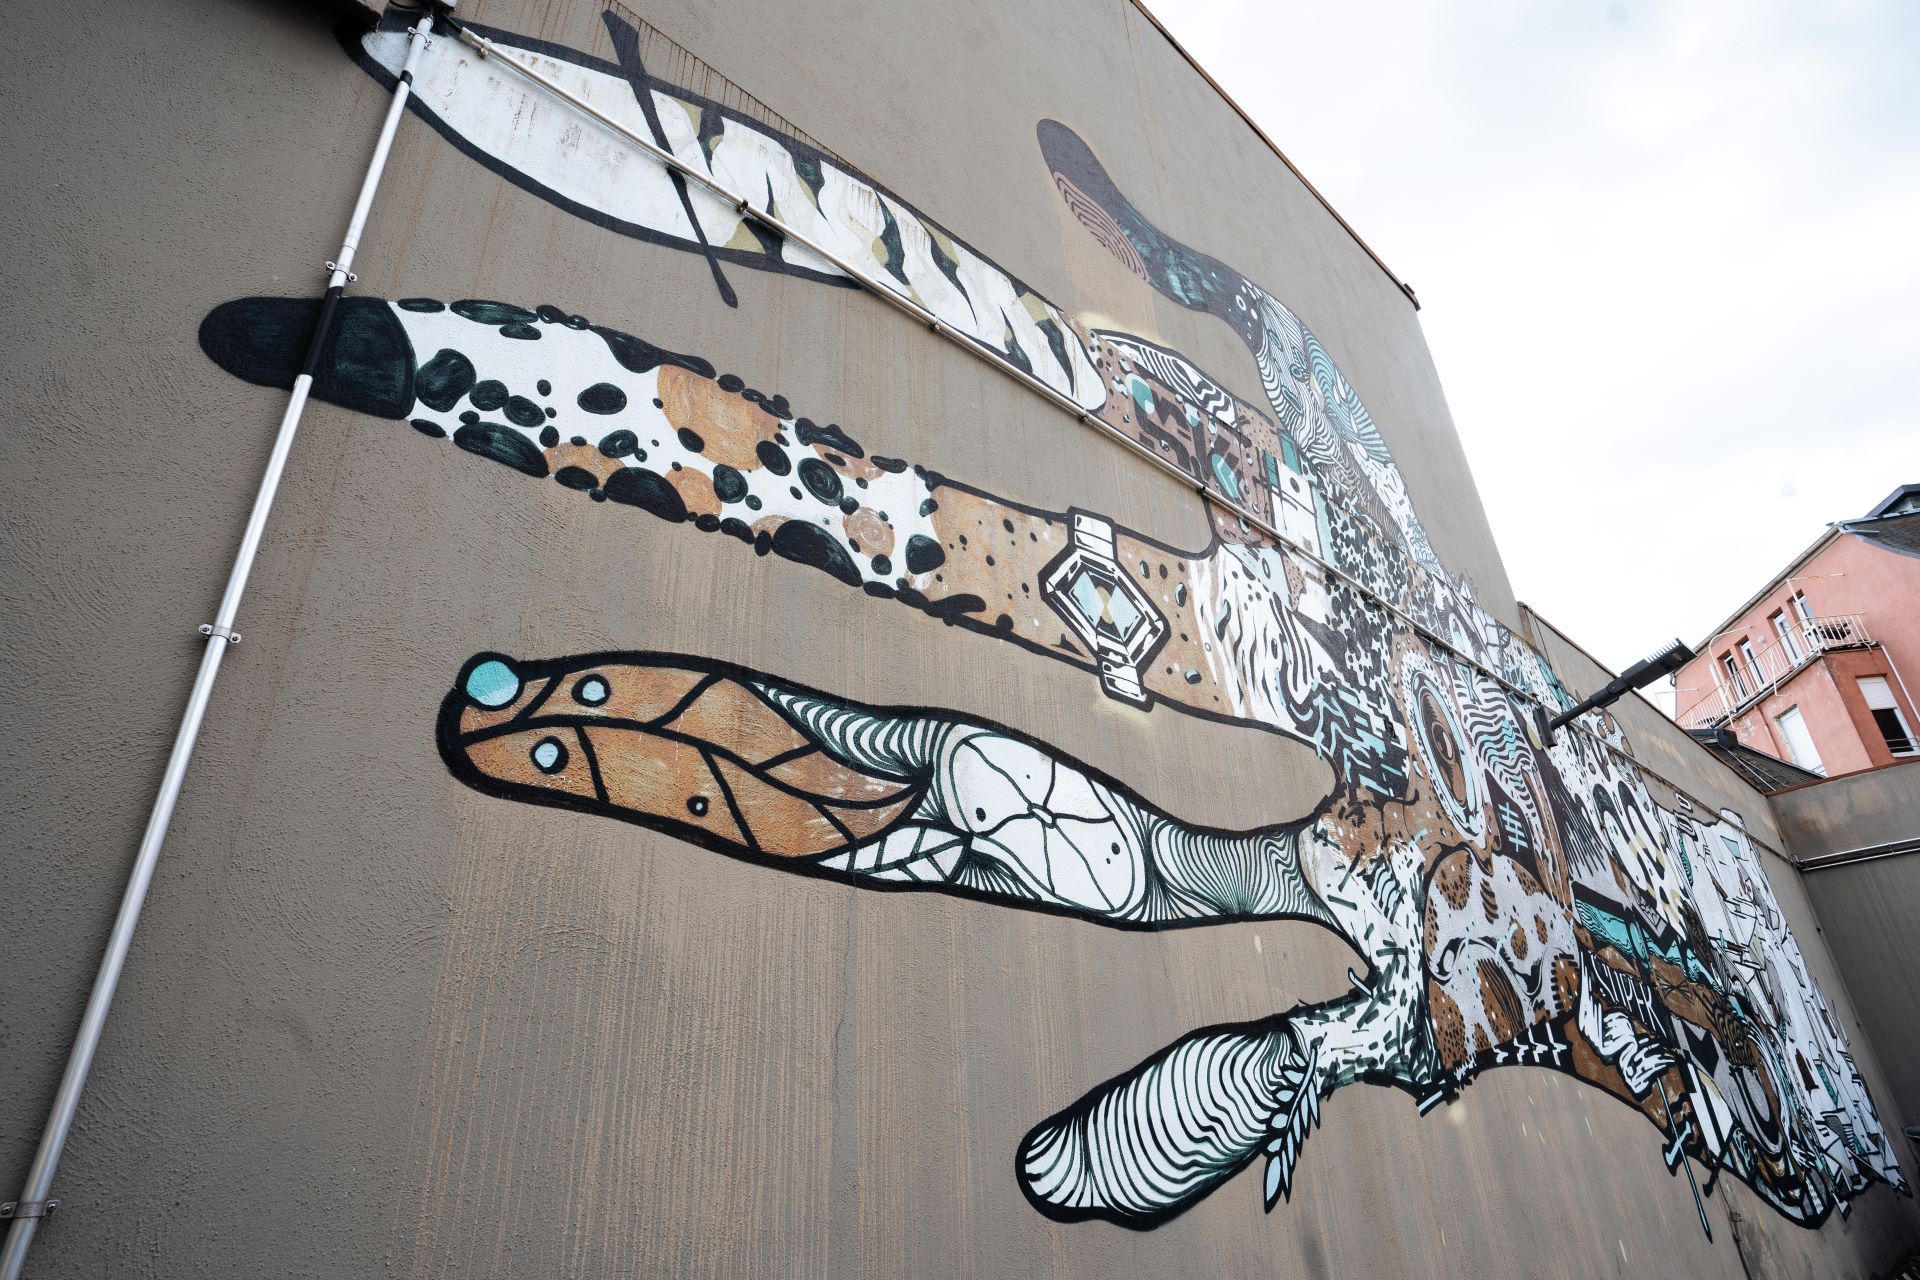 Un grand mur de béton d'un bâtiment est peint avec des graffitis : une main tendue est peinte de manière stylistique avec des blocs de couleurs et de motifs.